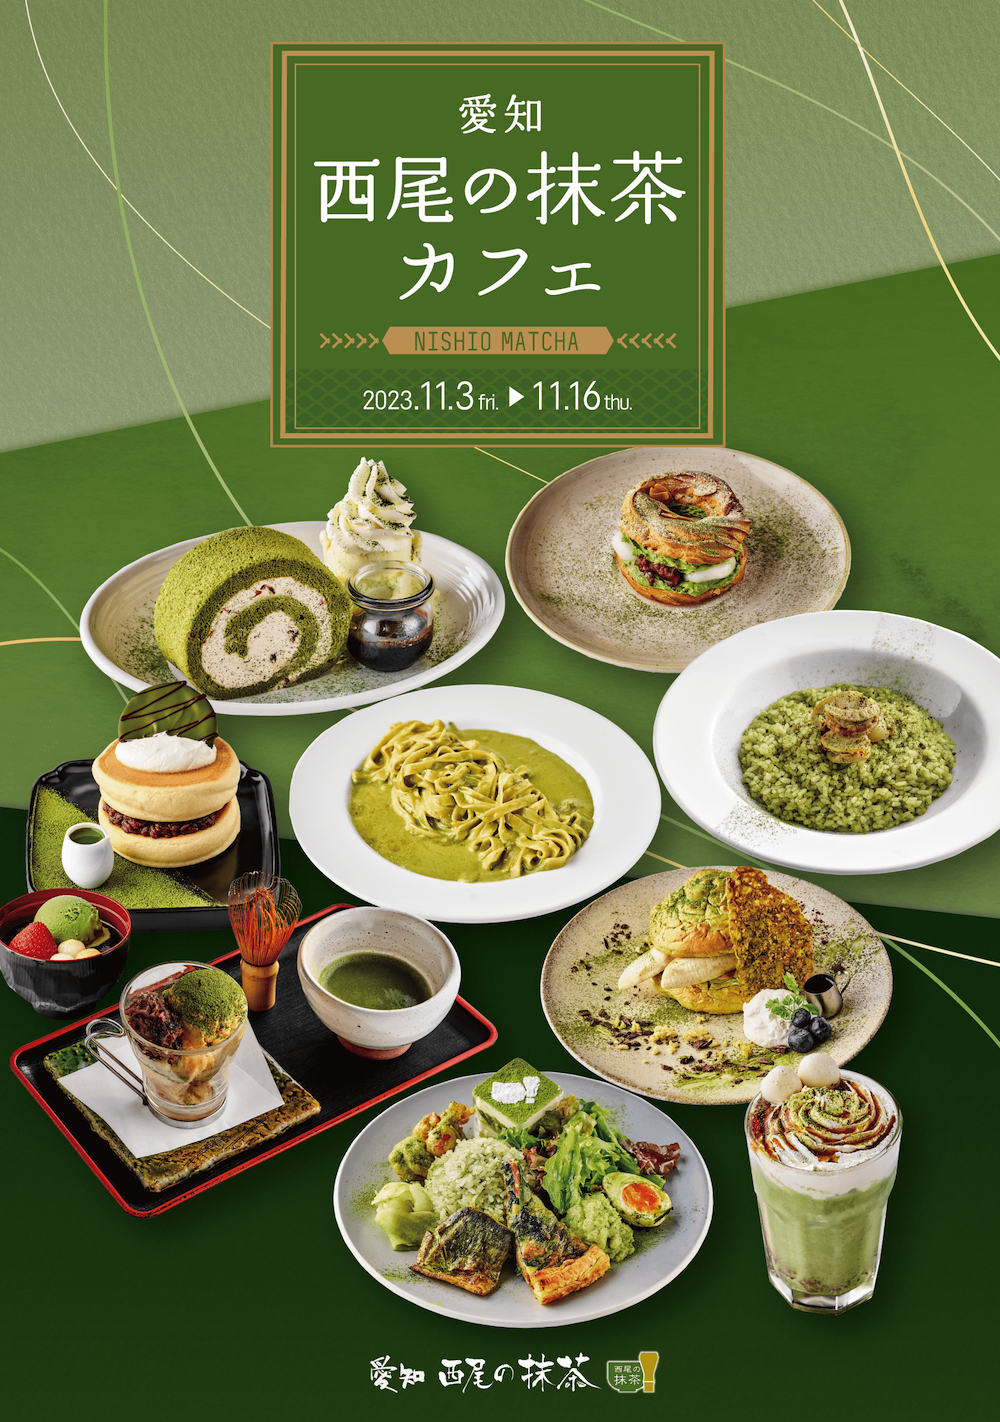 愛知県西尾市の西尾茶協同組合は11月3日〜11月16日、一昨年、昨年と開催したジンナンカフェ渋谷店とのコラボレーション飲食企画を、第3弾の今年は渋谷エリアの人気カフェ8店舗に拡大して開催する。